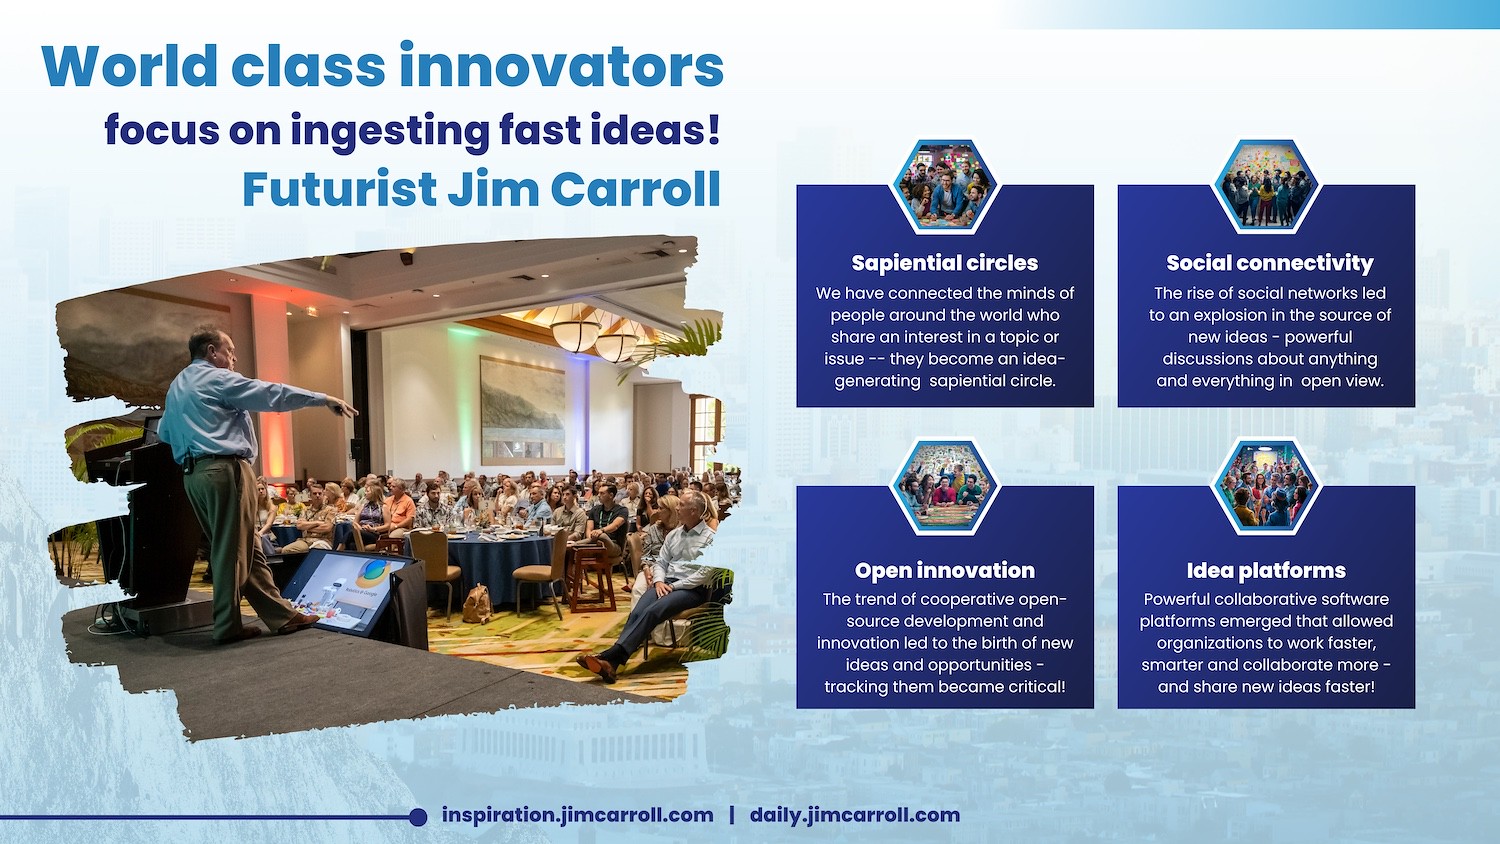 "World class innovators focus on ingesting fast ideas" - Futurist Jim Carroll